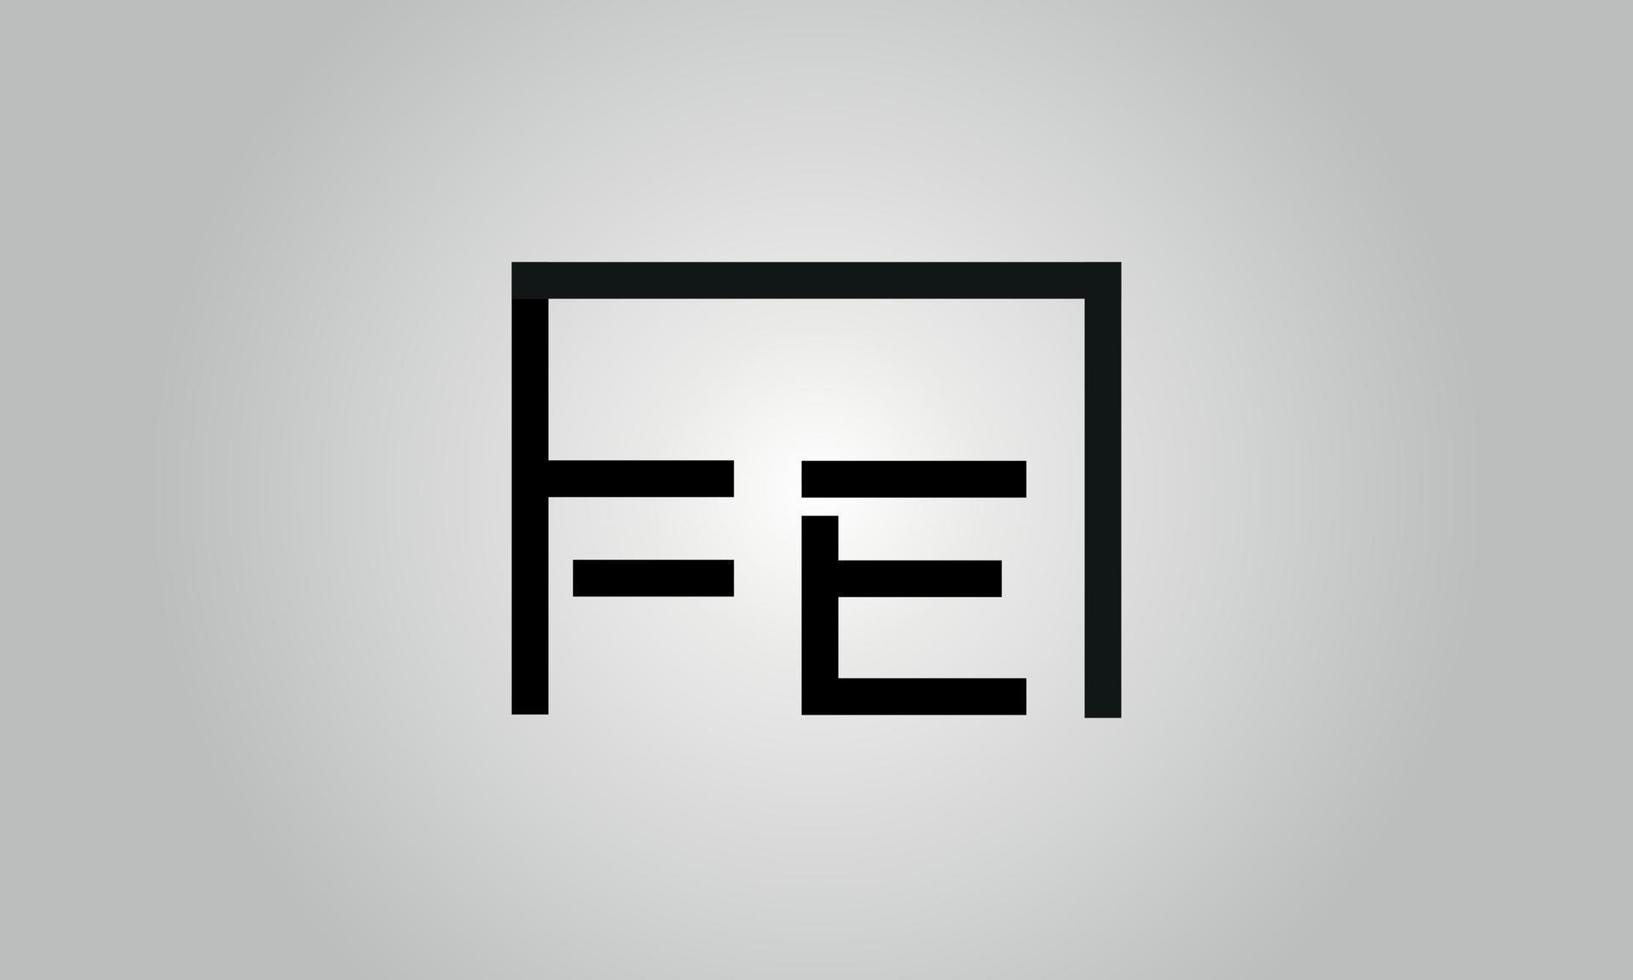 design de logotipo de letra fe. fe logotipo com forma quadrada no modelo de vetor livre de vetor de cores pretas.